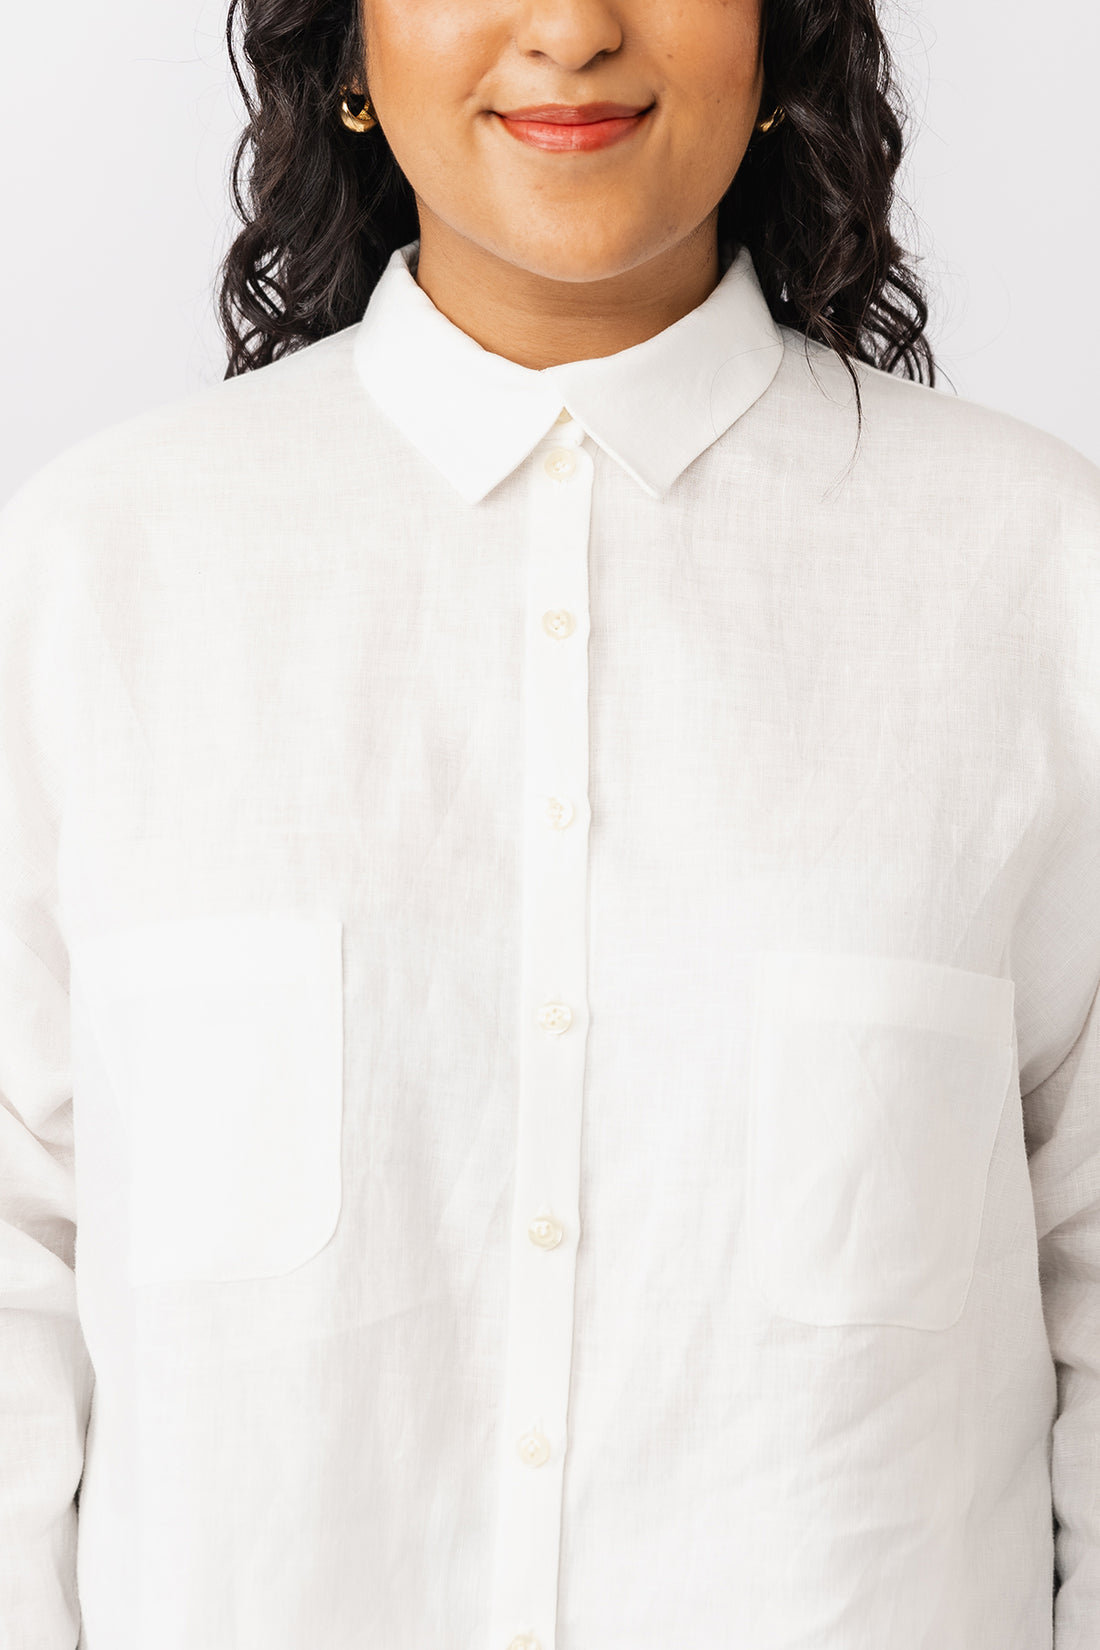 Papírový střih Silmu Shirt & Shirt Dress || Šaty & košile